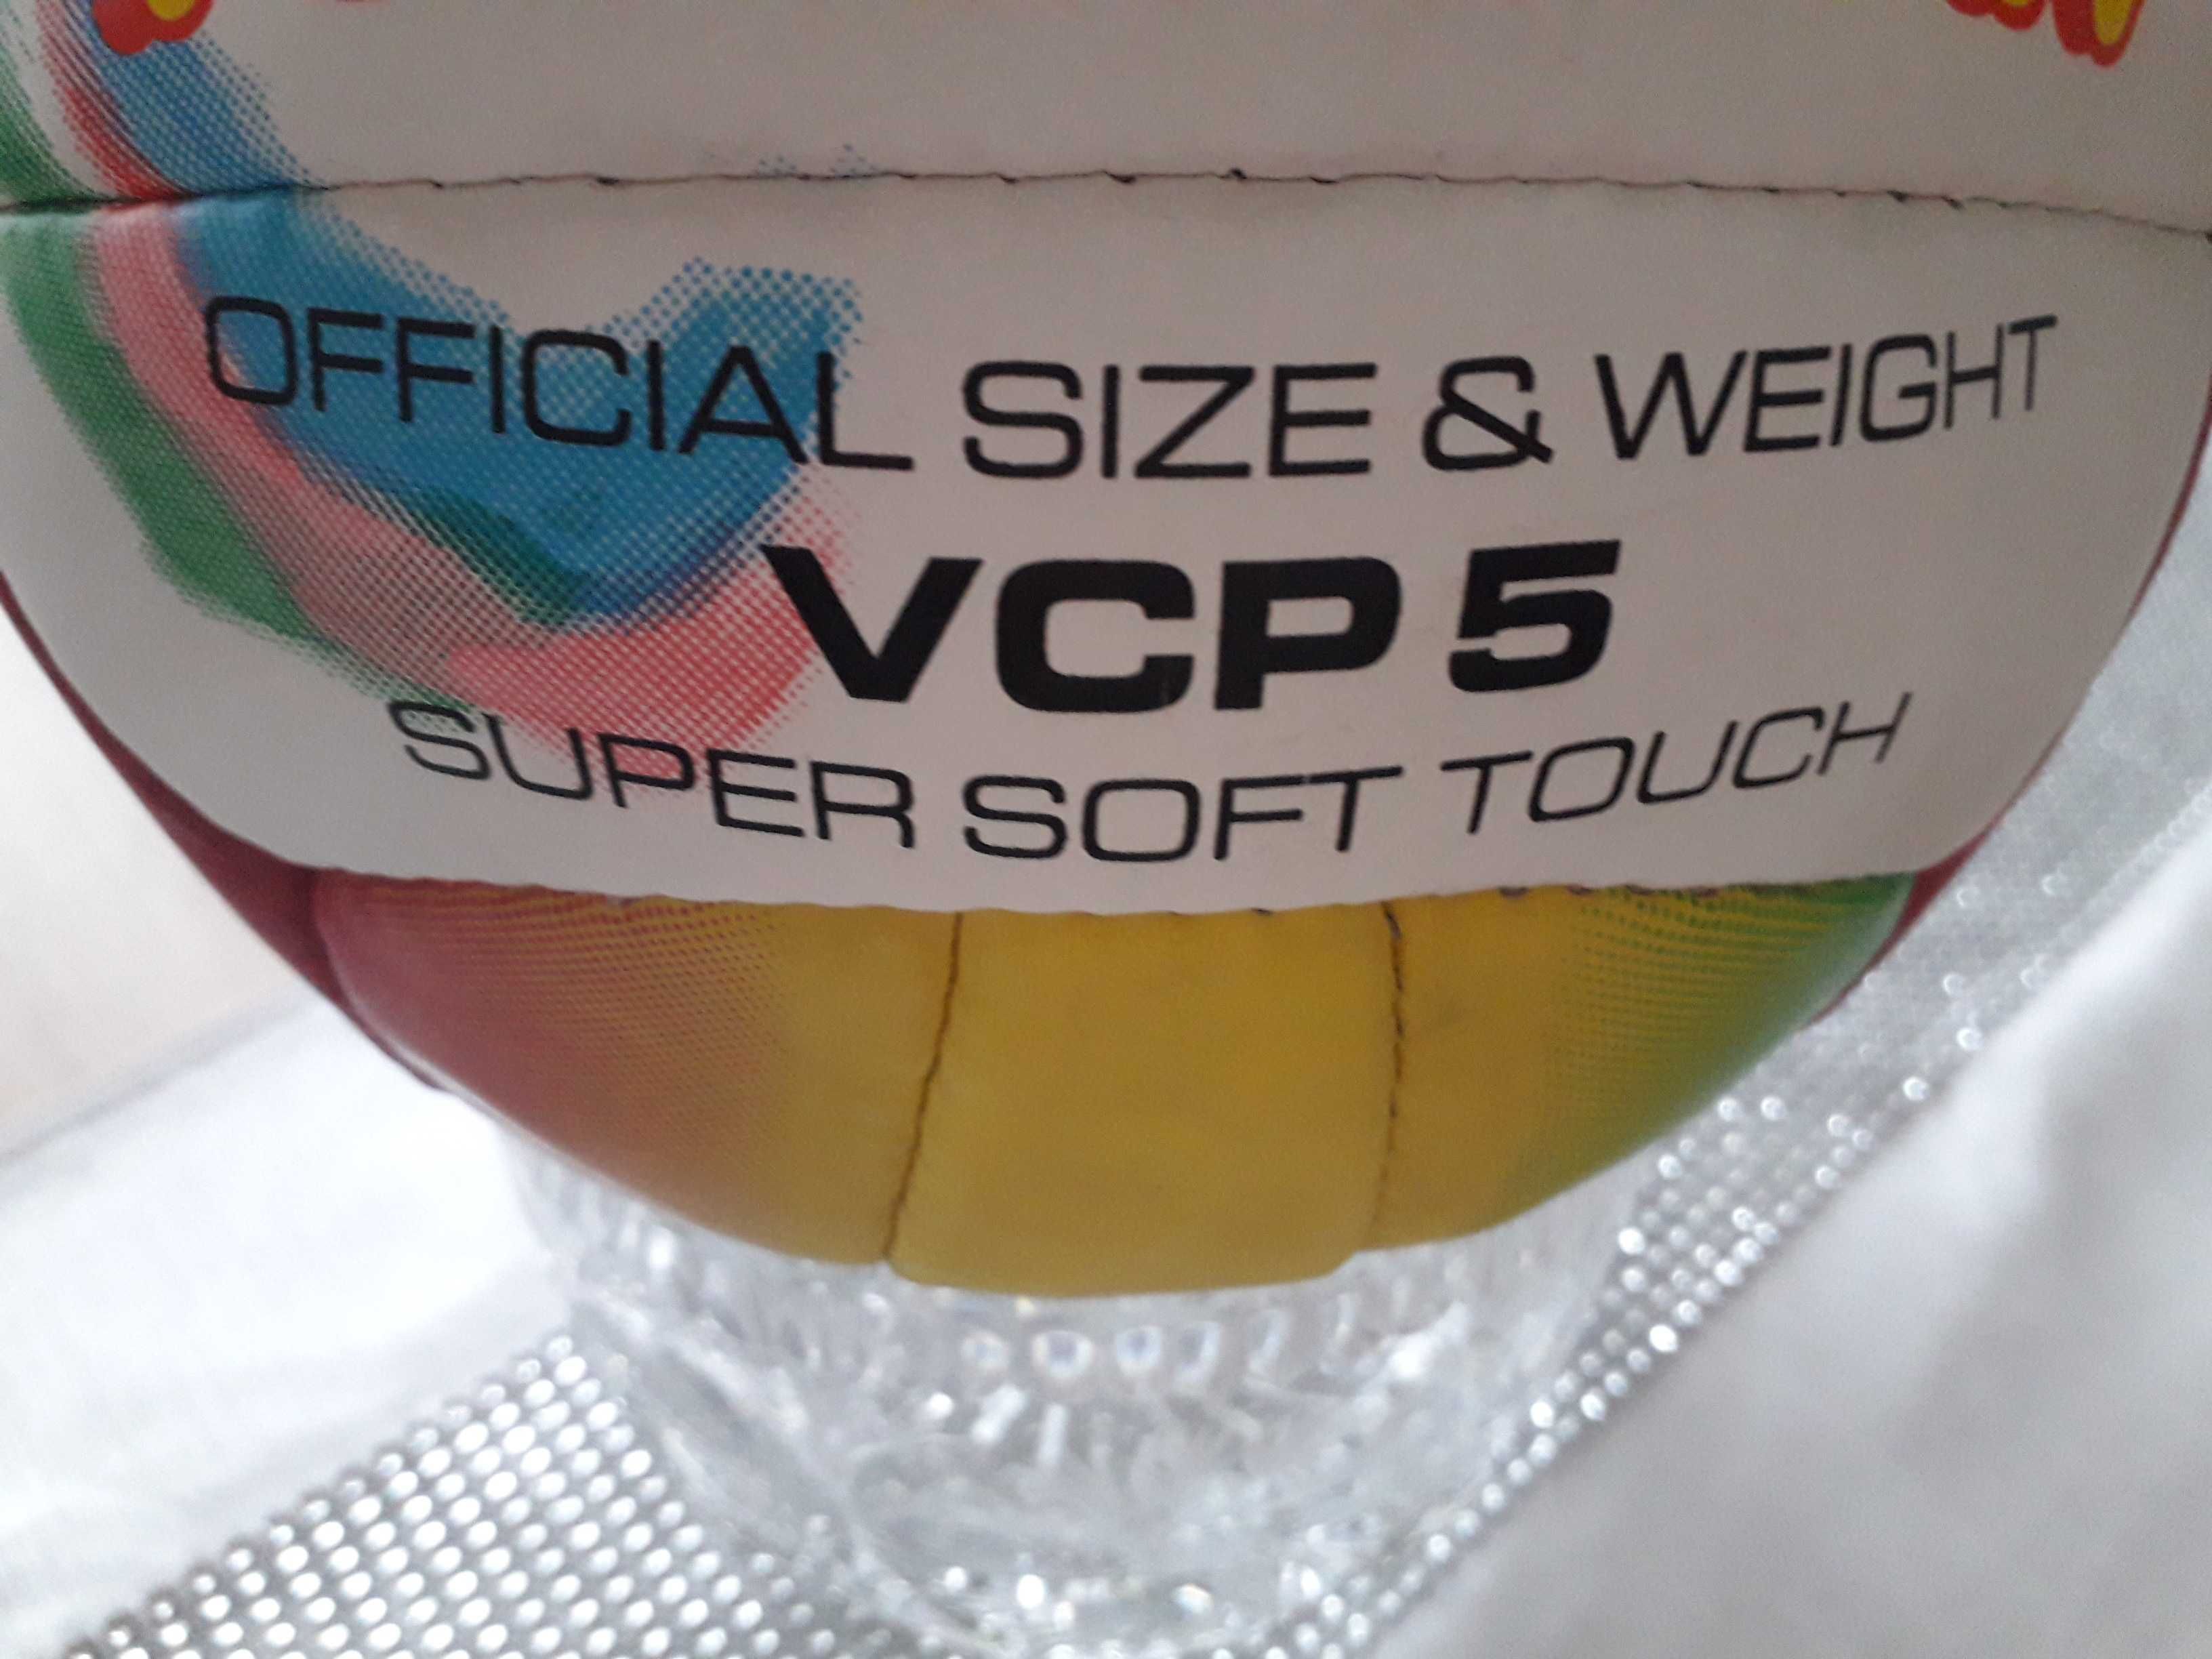 Piłka siatkowa Goldstar, dziecięca. VCP 5, Super soft touch.